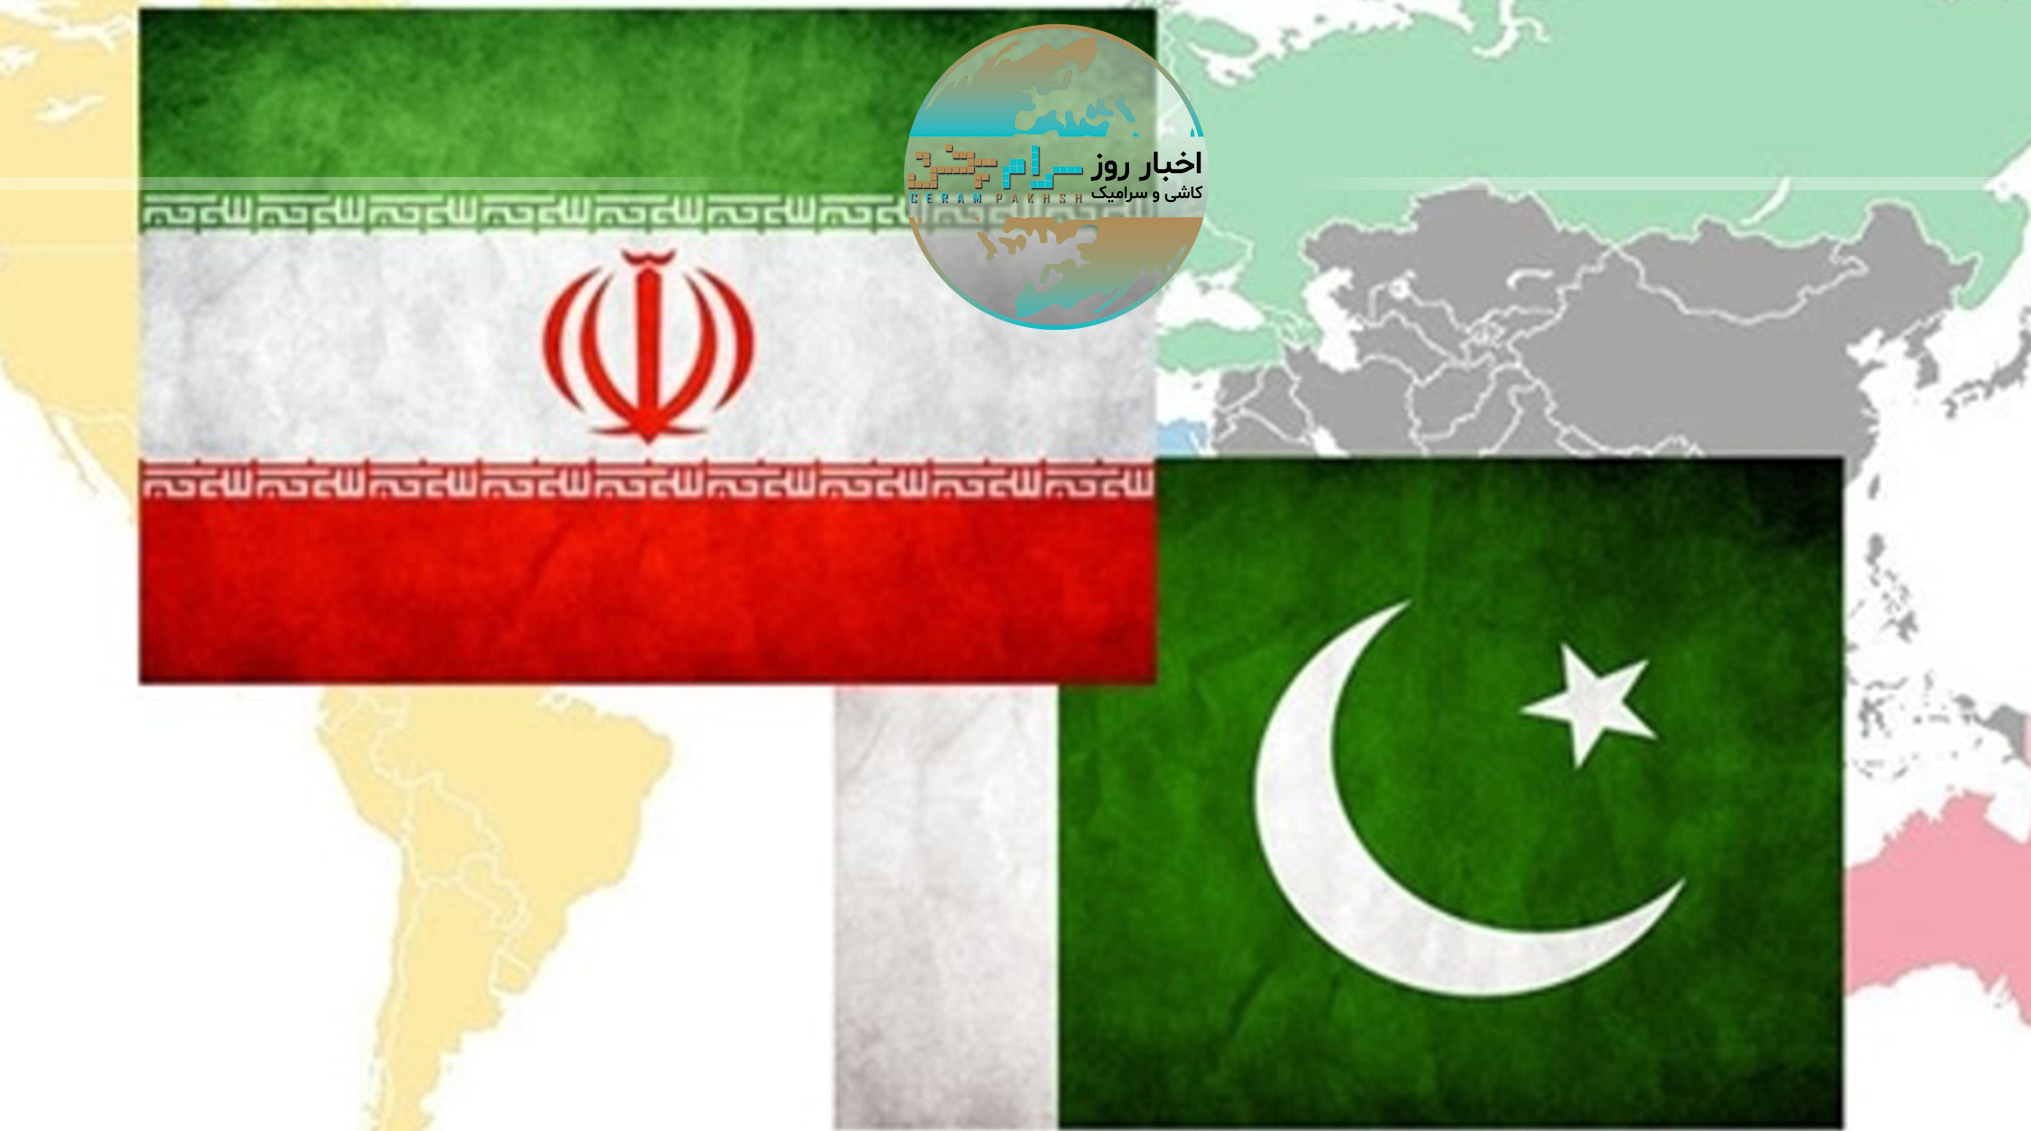 رسانه پاکستانی: باید از فرصت تجارت با ایران استفاده کنیم